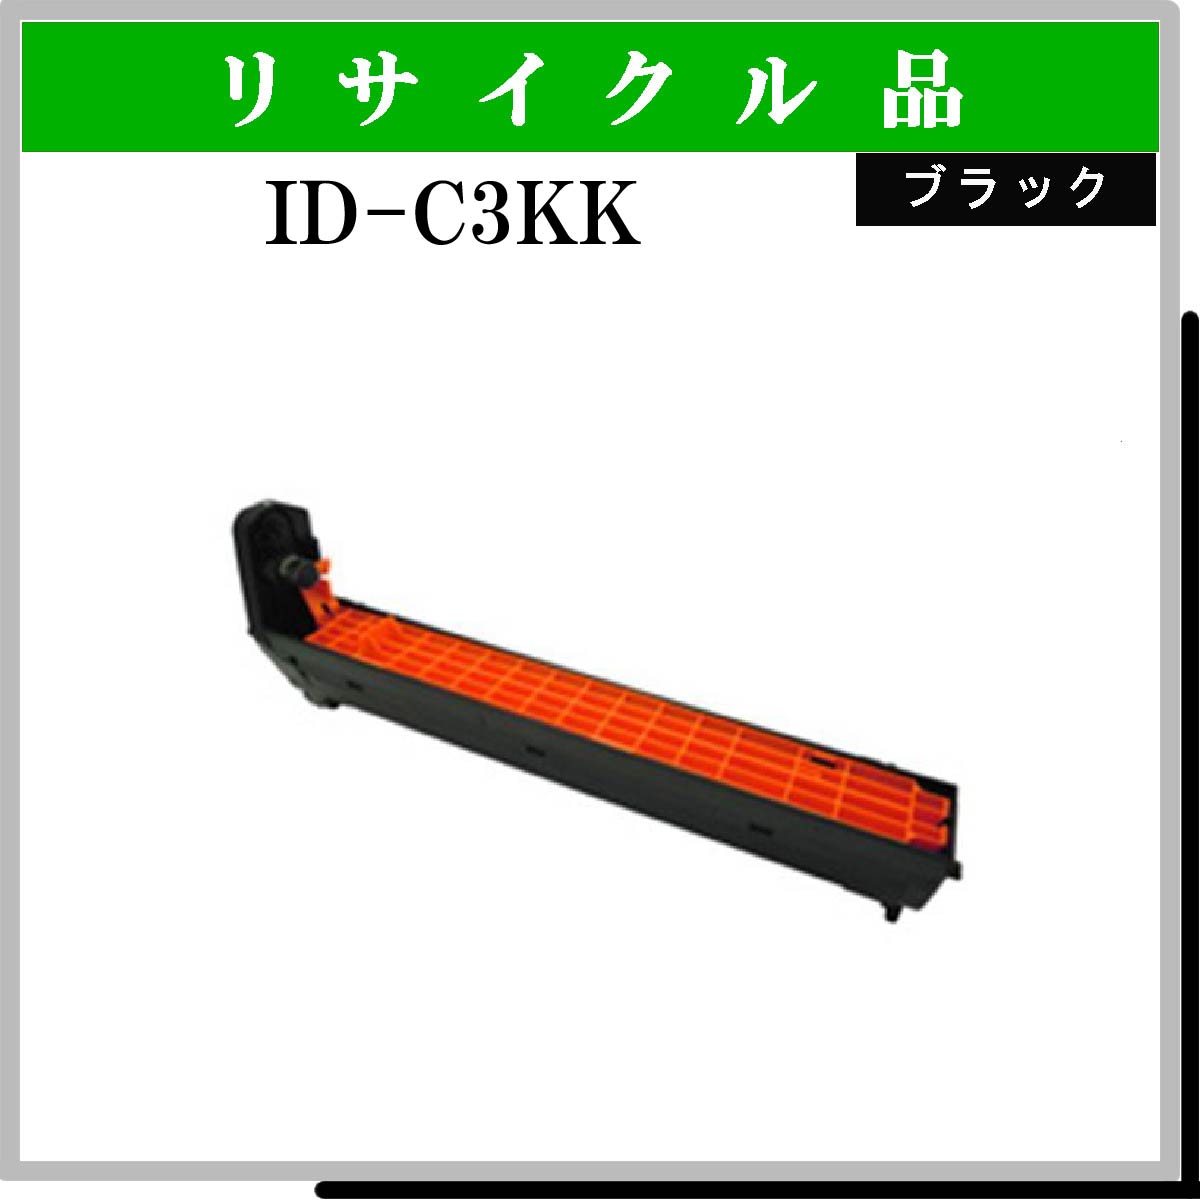 ID-C3KK